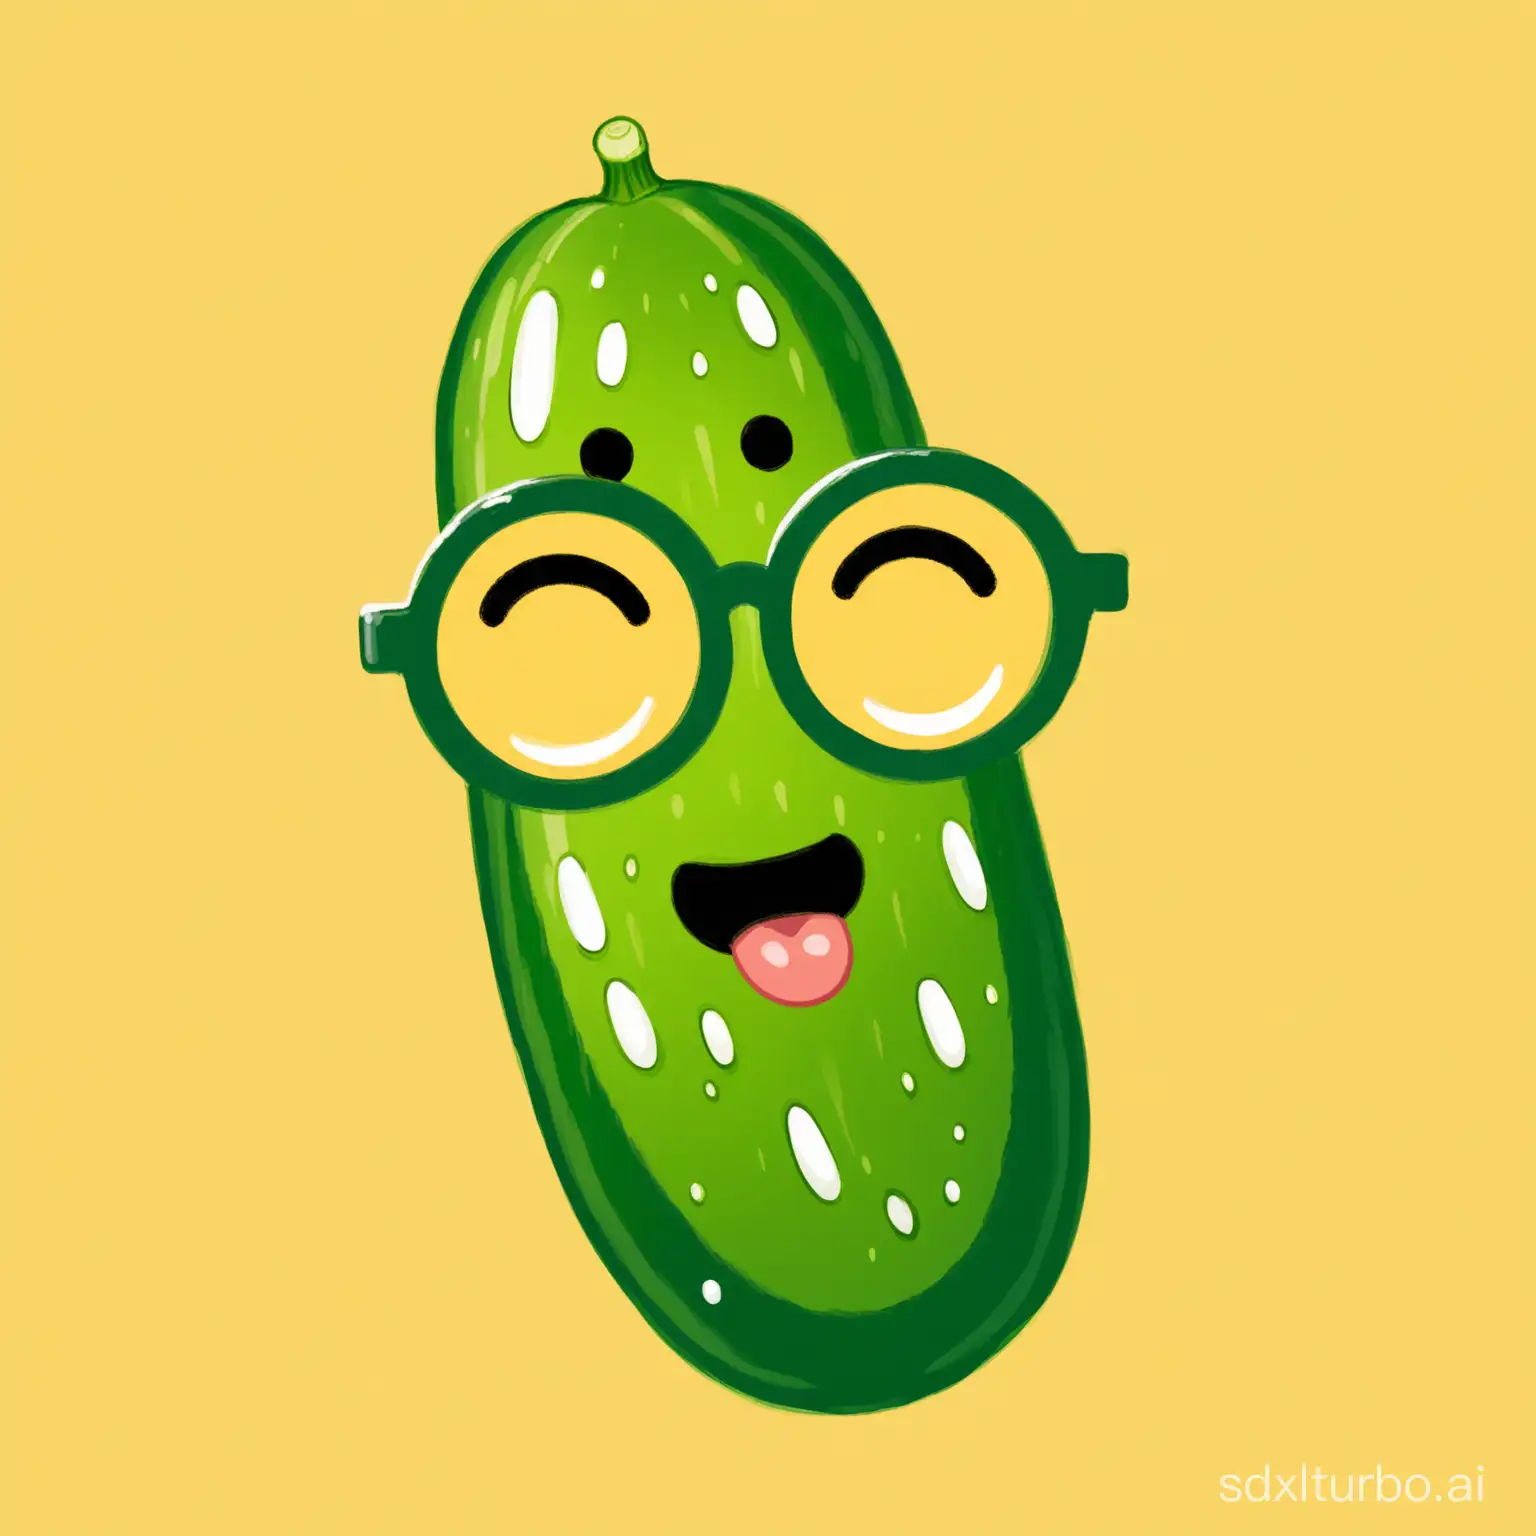 Nerd-Emoji-Pickled-Cucumber-Art